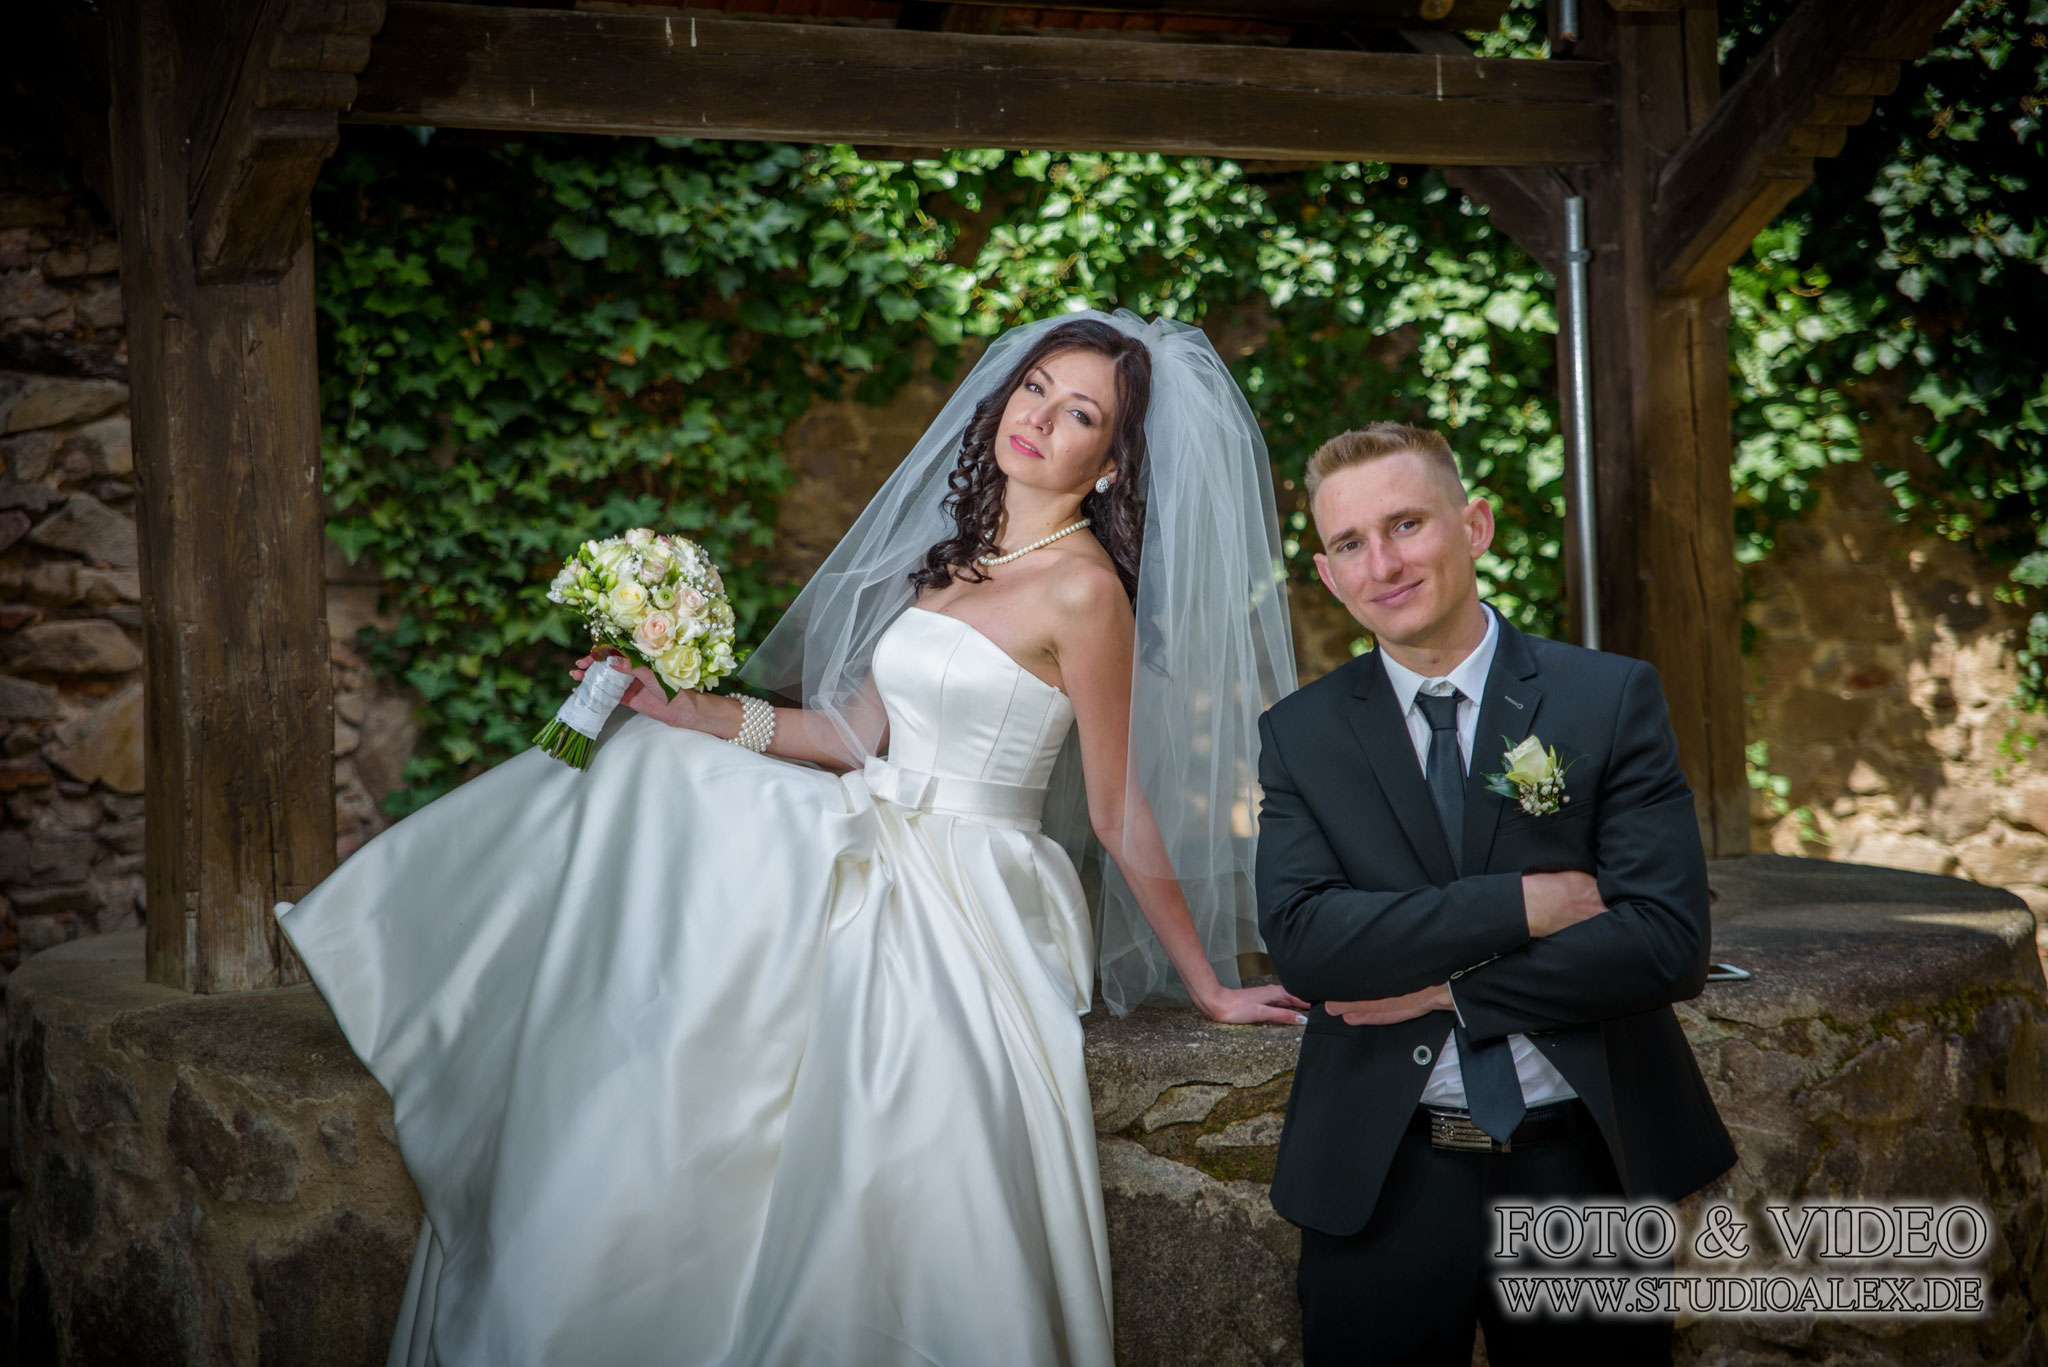 Suche nach dem Hochzeitsfotografen in Weiden in der Oberpfalz Bayern?